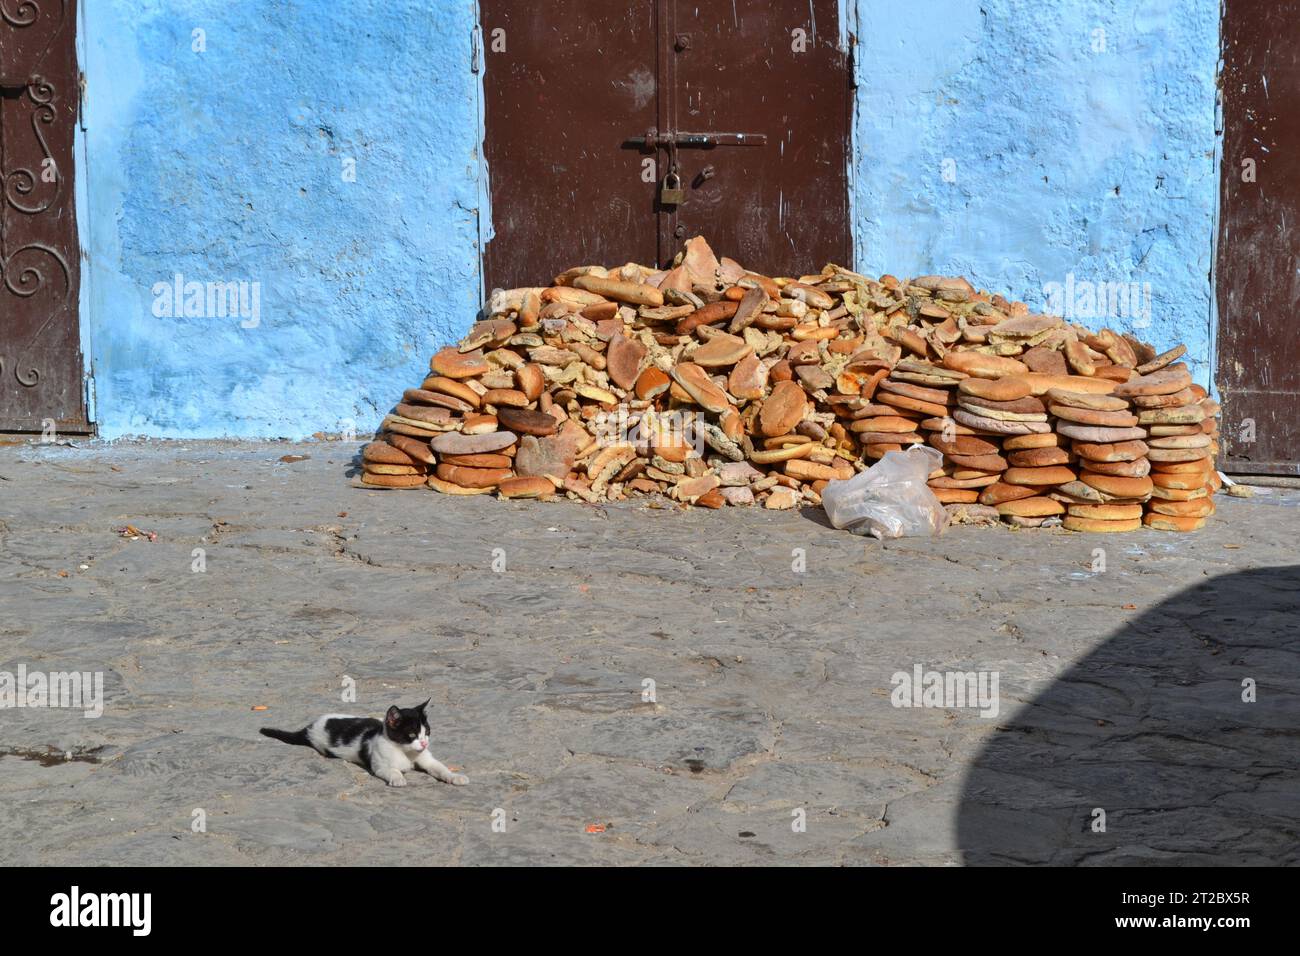 Gaspillage alimentaire avec du vieux pain jeté et un chat errant dans une rue de la vieille ville de Tanger, au Maroc. Banque D'Images